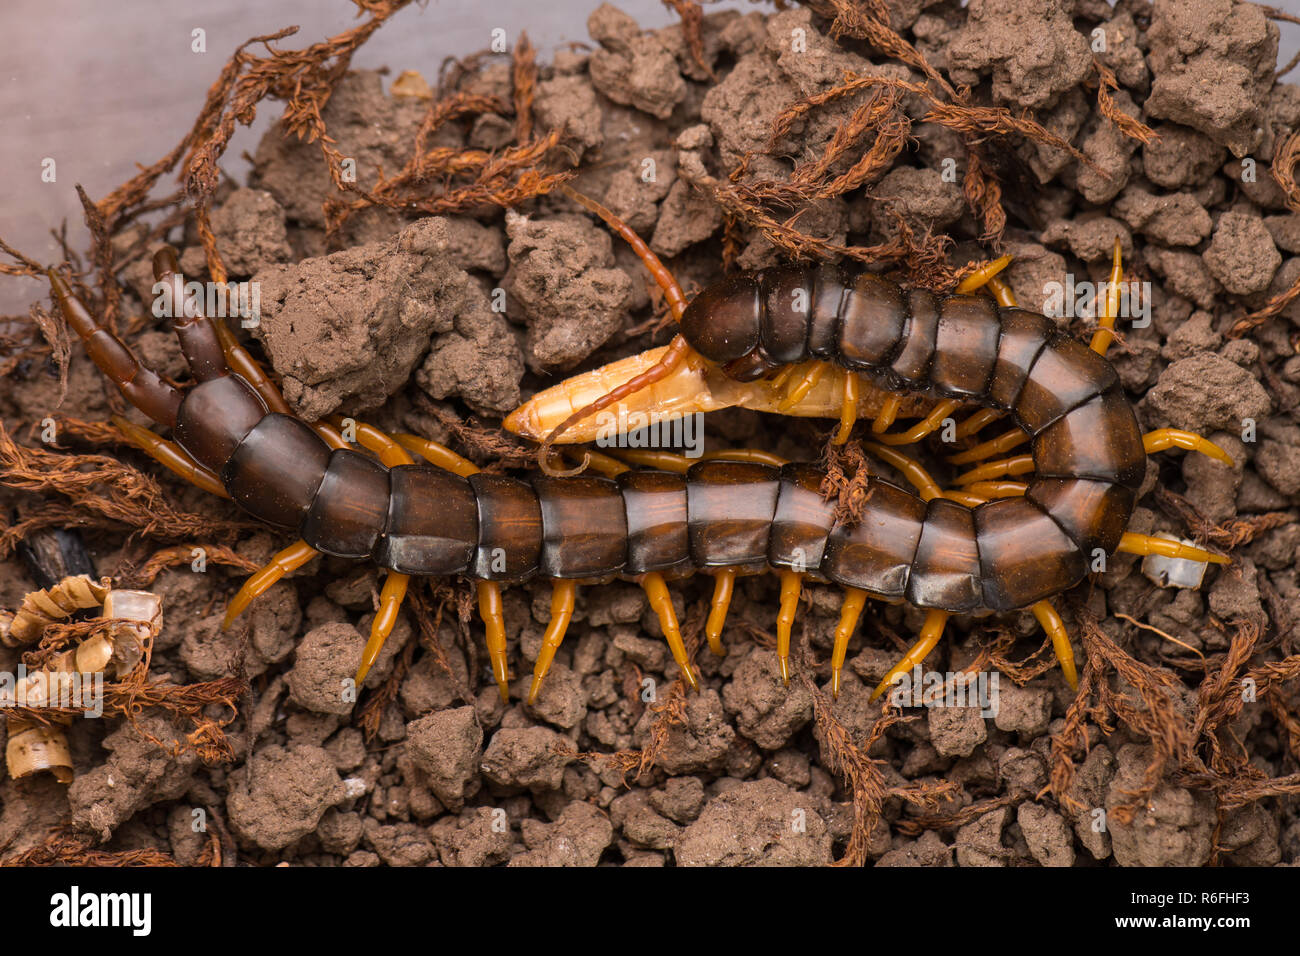 Mediterranean banded centipede, Scolopendra cingulata Stock Photo